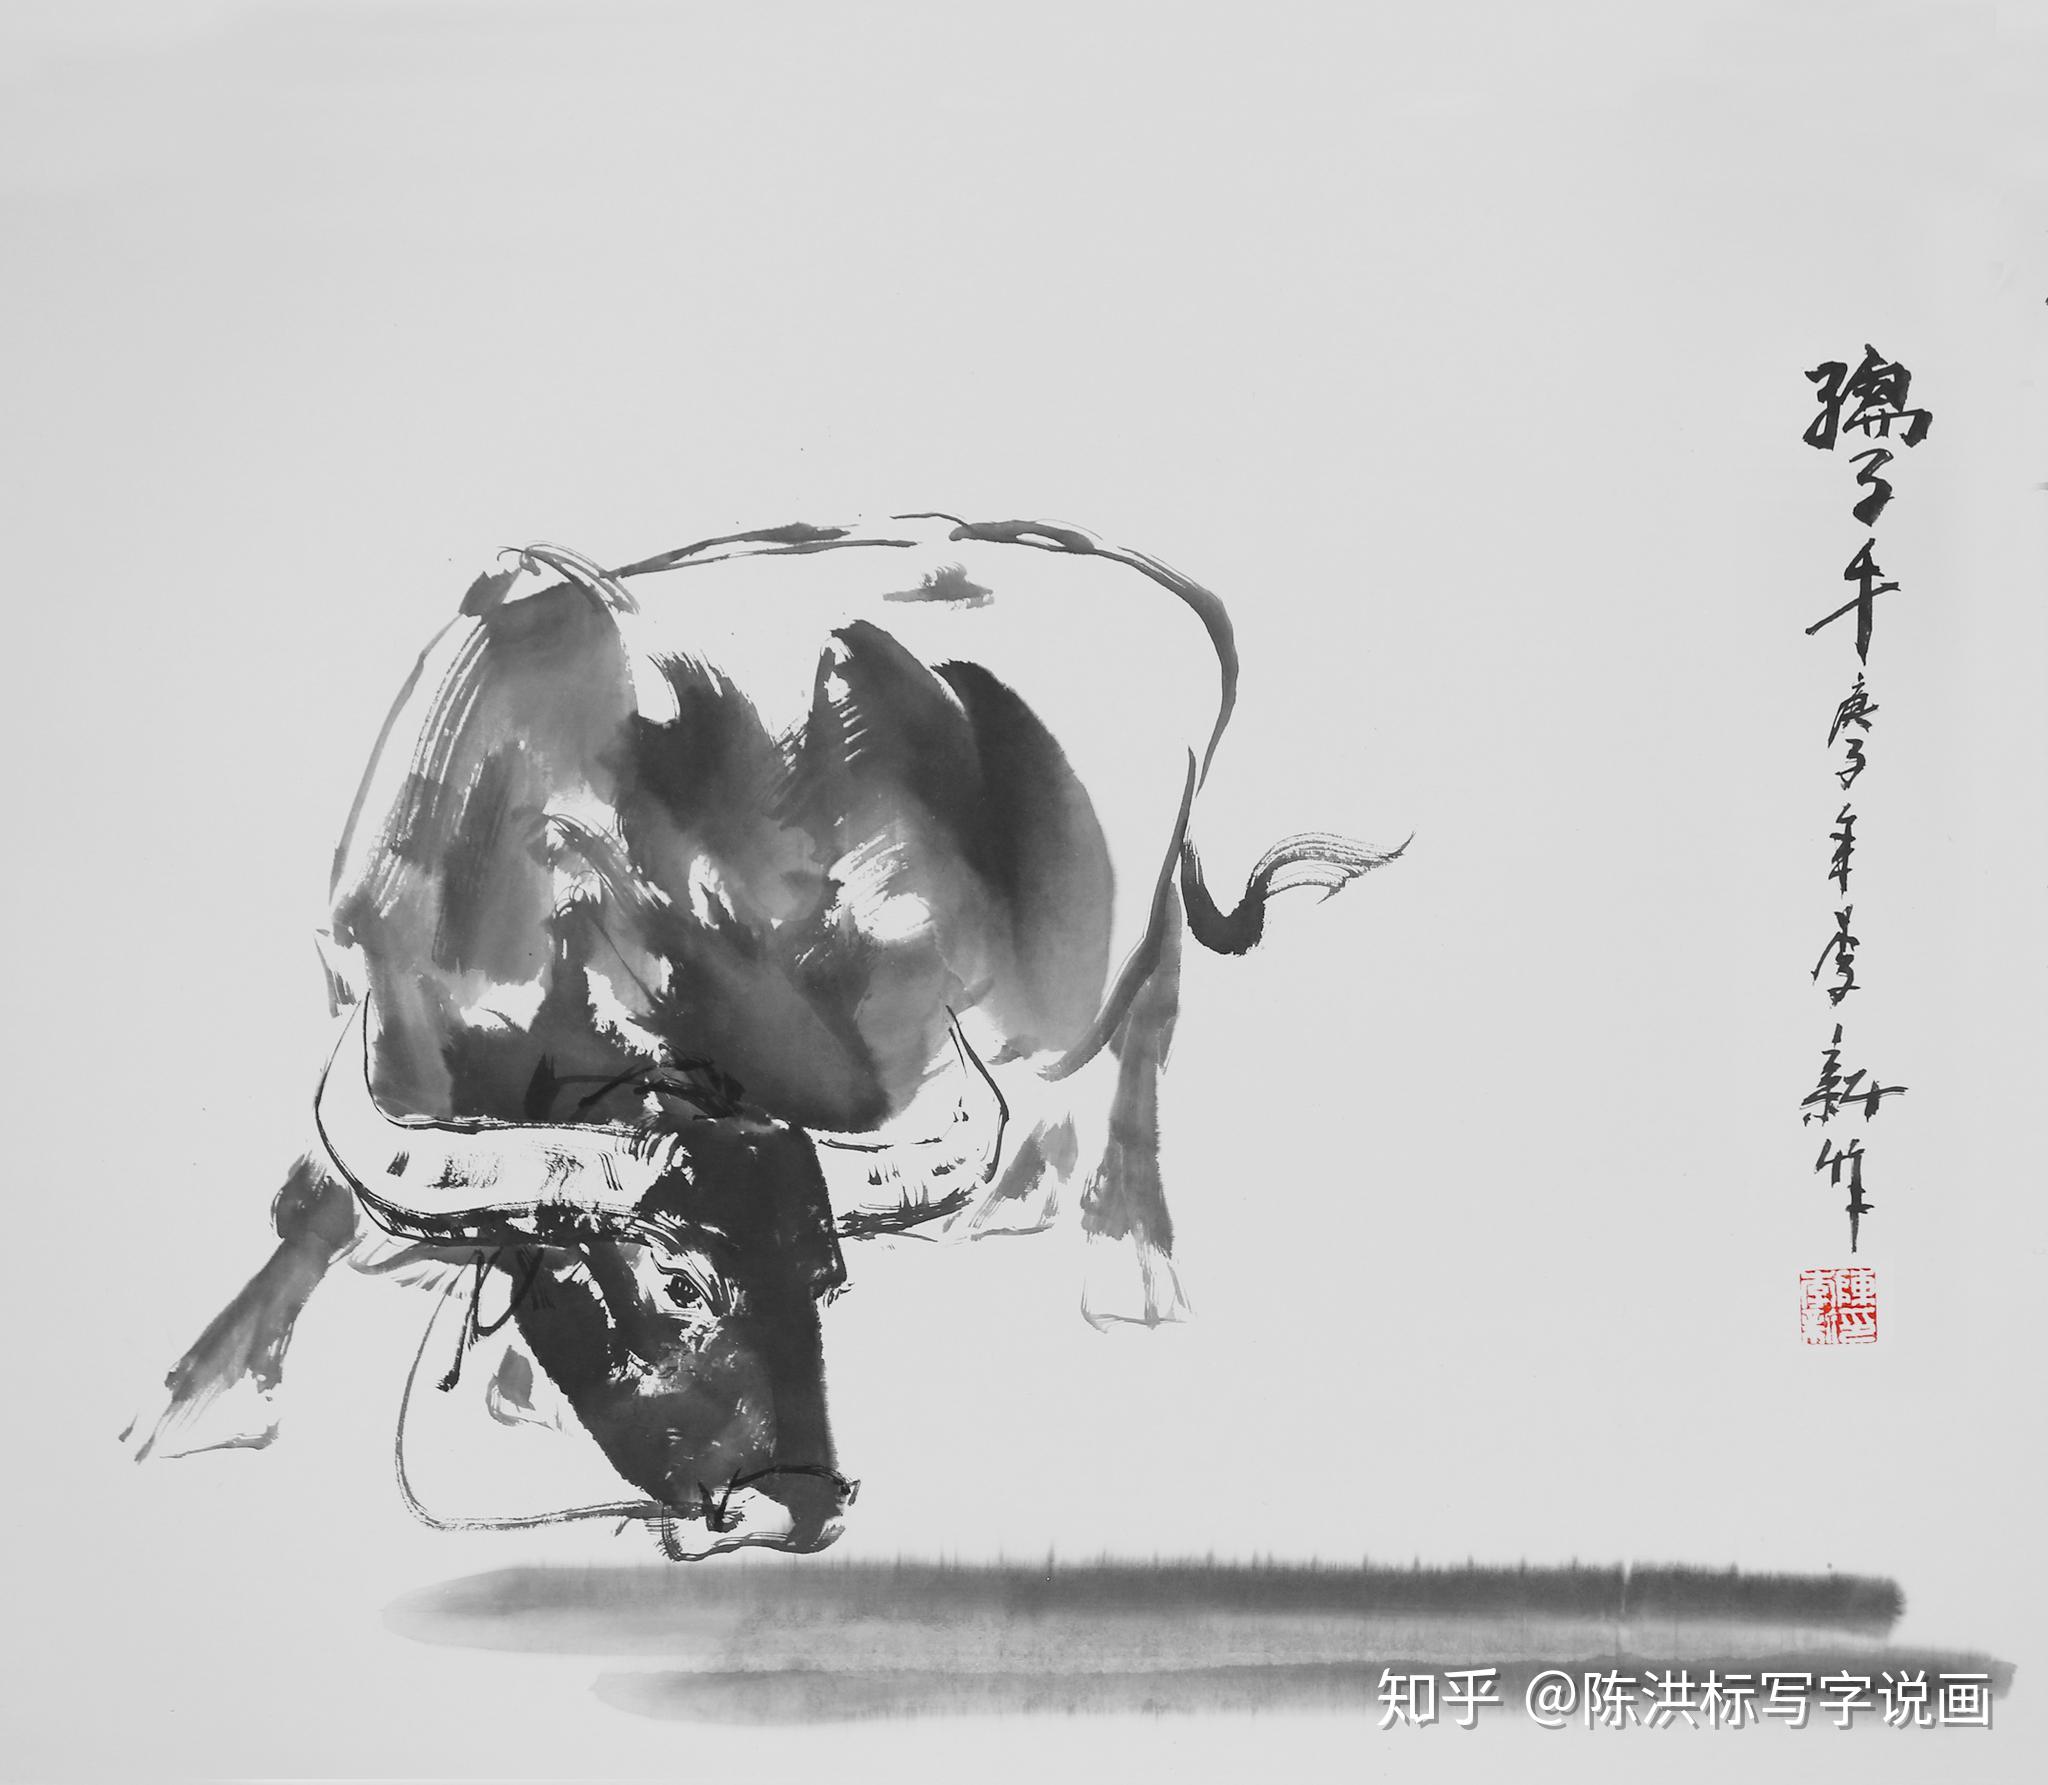 一幅牛气冲天的画,却让画家陈李新,结缘中国科技产业大咖戴伟民